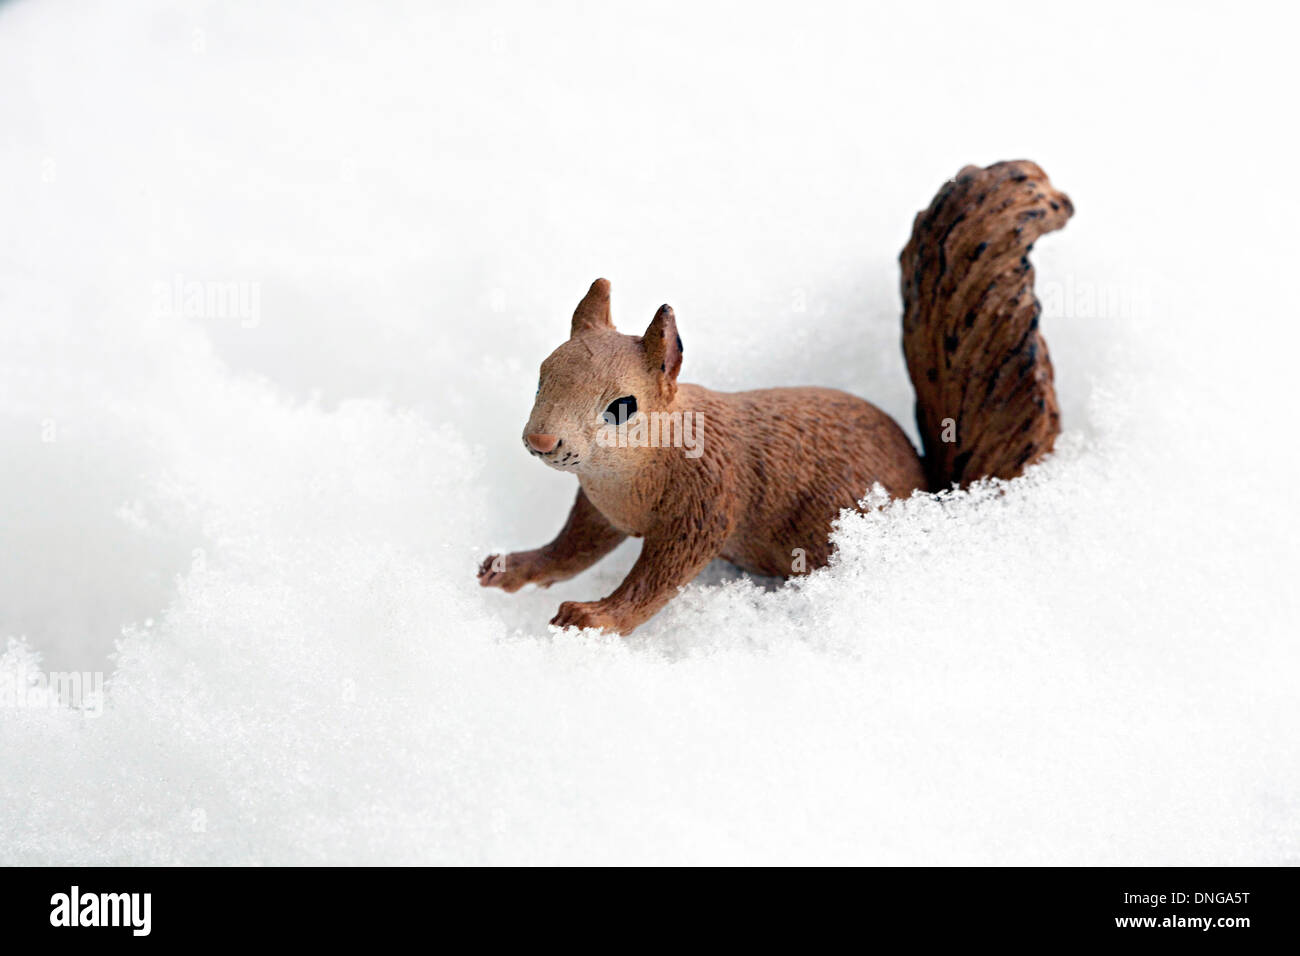 Eichhoernchen; Schnee, Kitsch Stock Photo